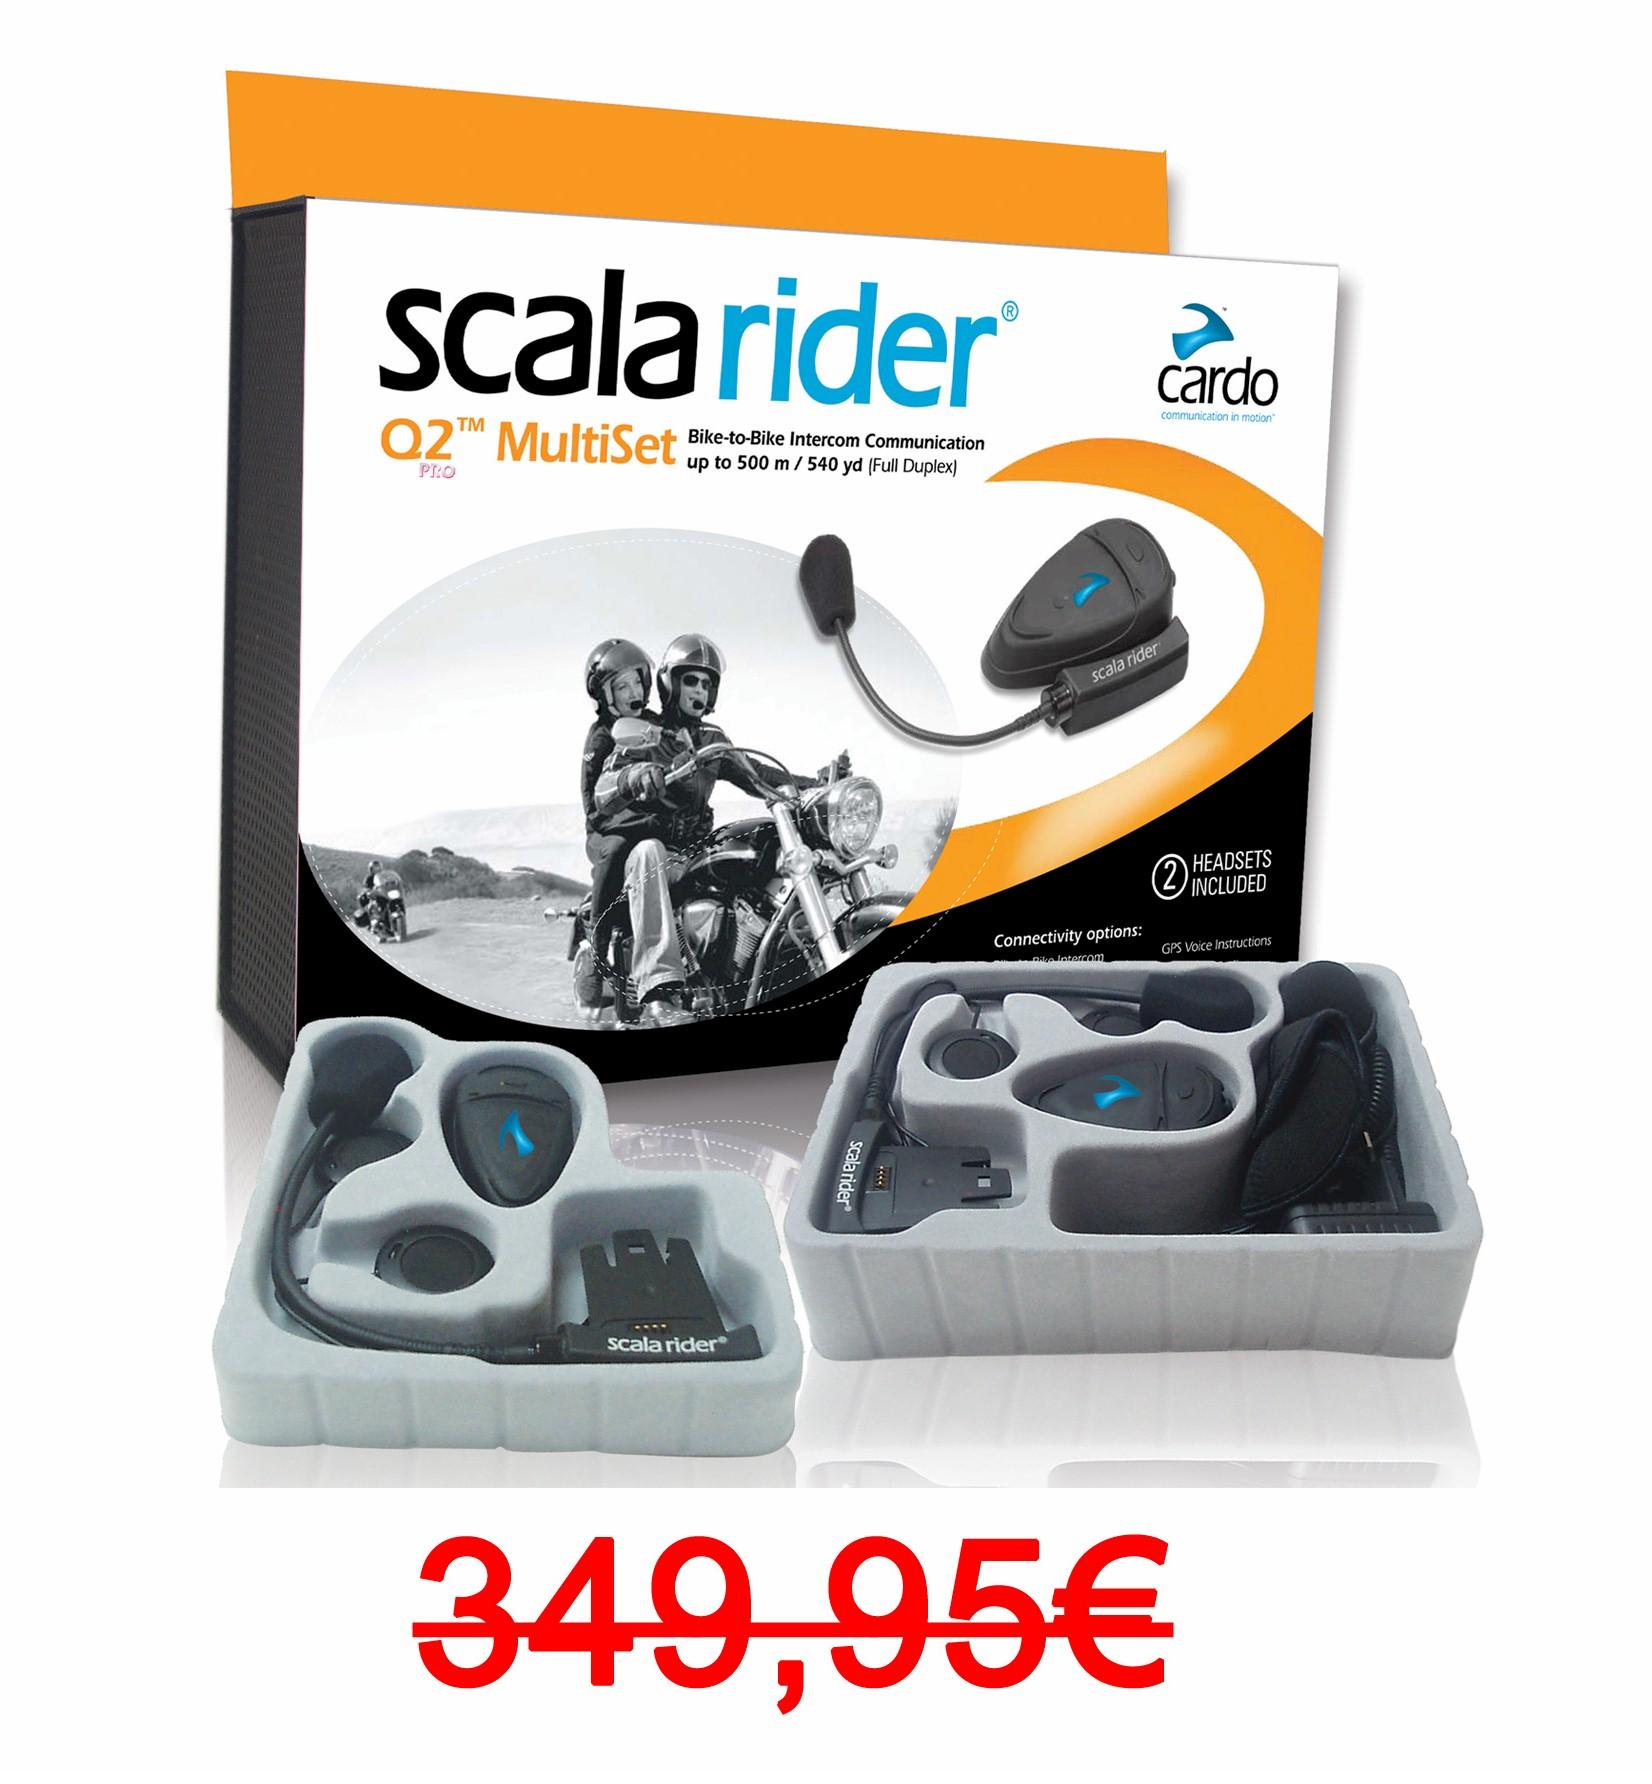 Foto Scala Rider Q2 Multiset PRO, pareja intercom moto Bluetooth con radio FM